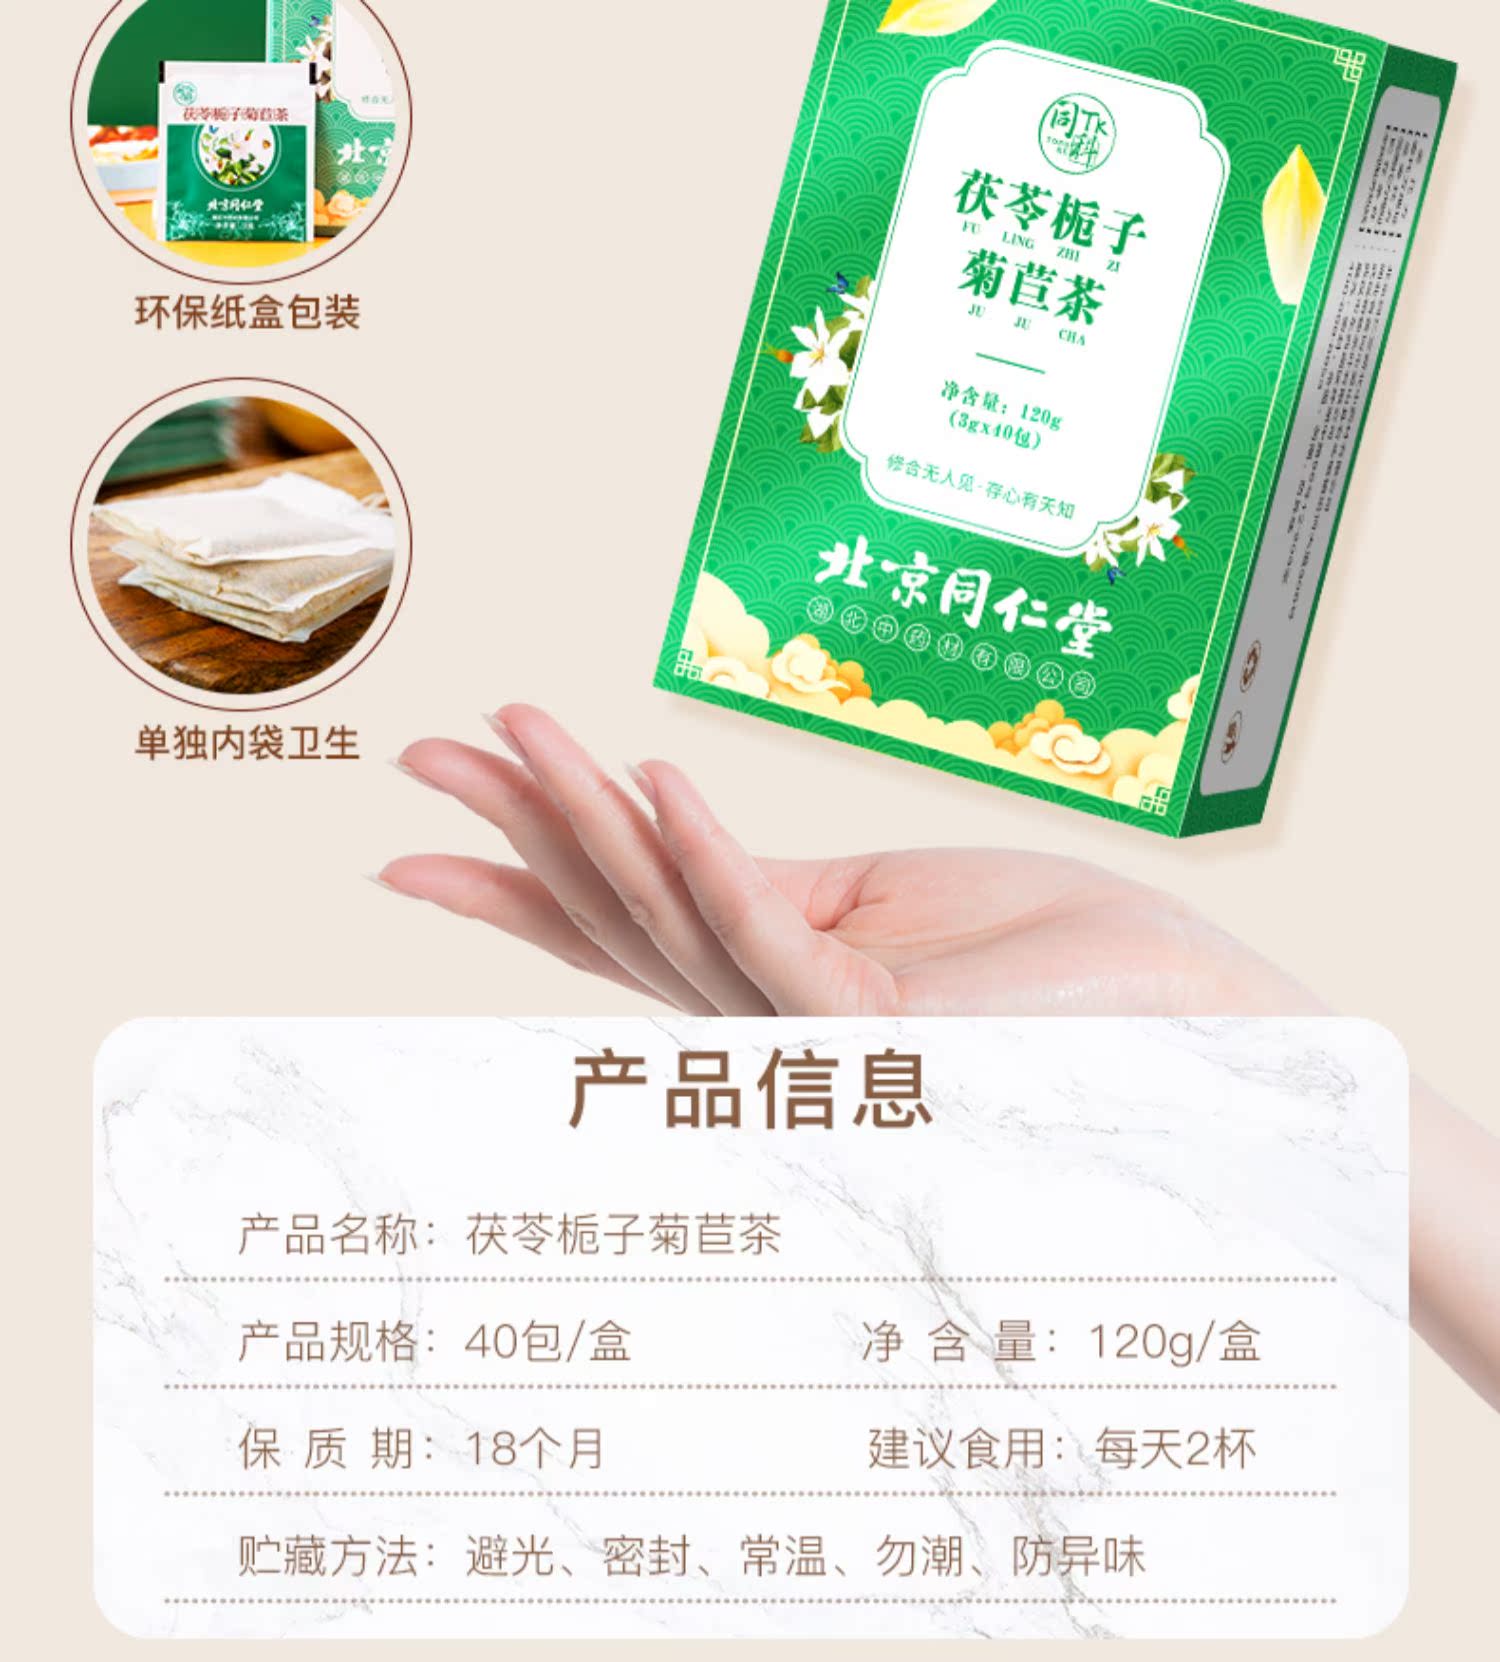 北京同仁堂正品菊苣栀子茶120g